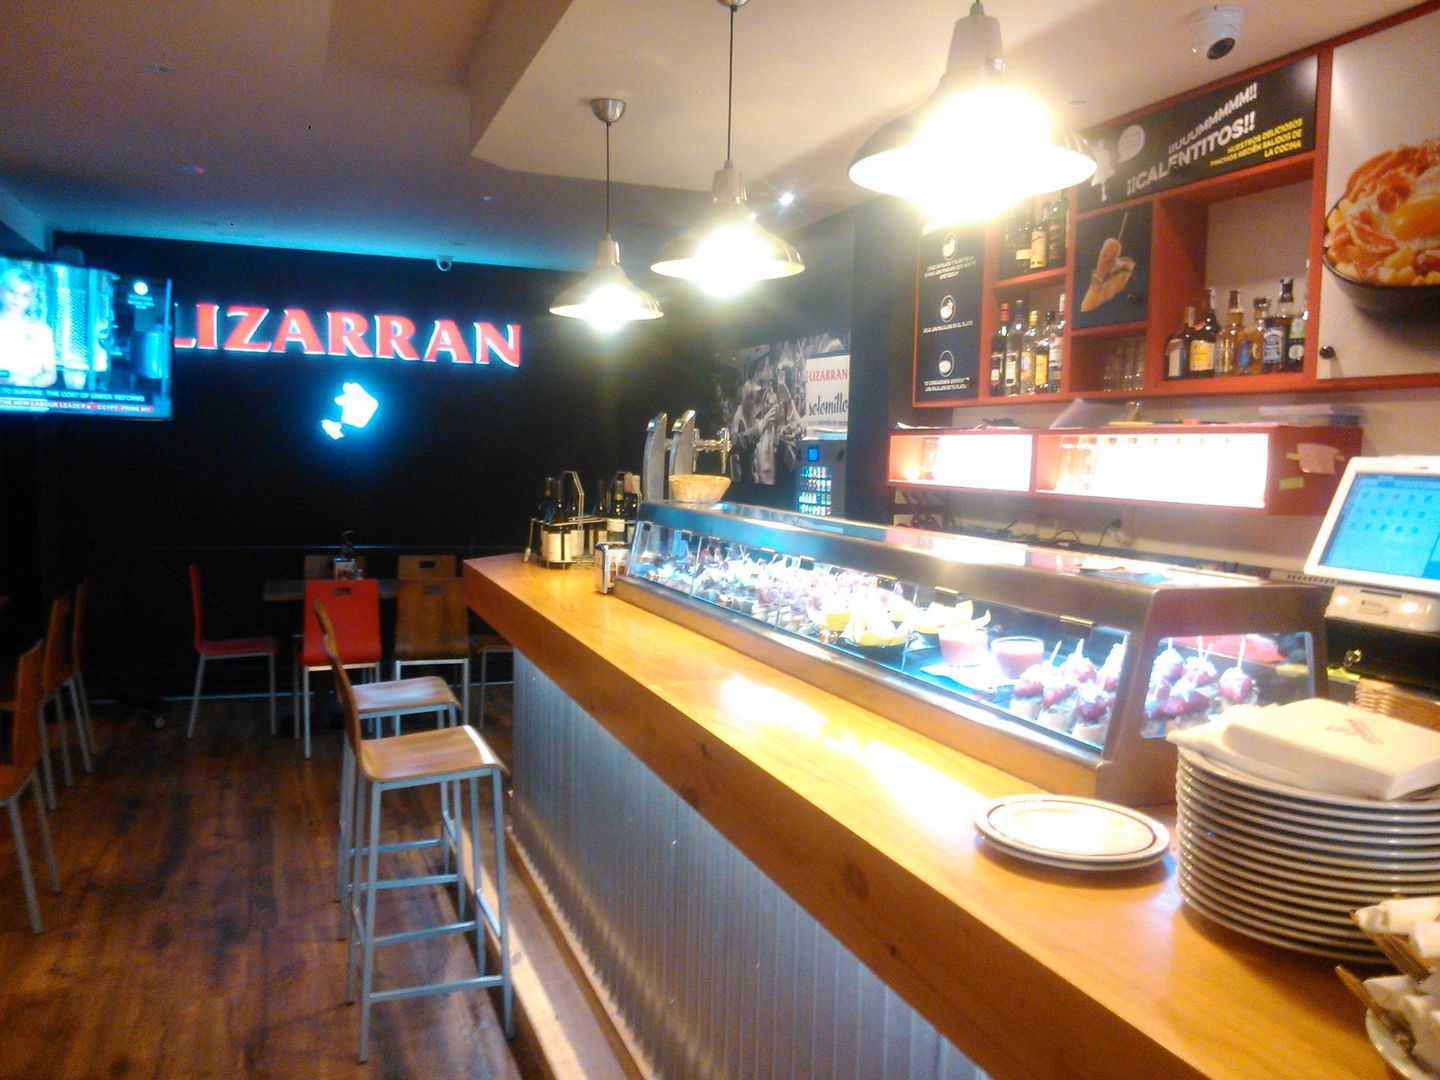 Así era el local donde Fernando montó un Lizarrán sin saber que no tenía licencia de restaurante.